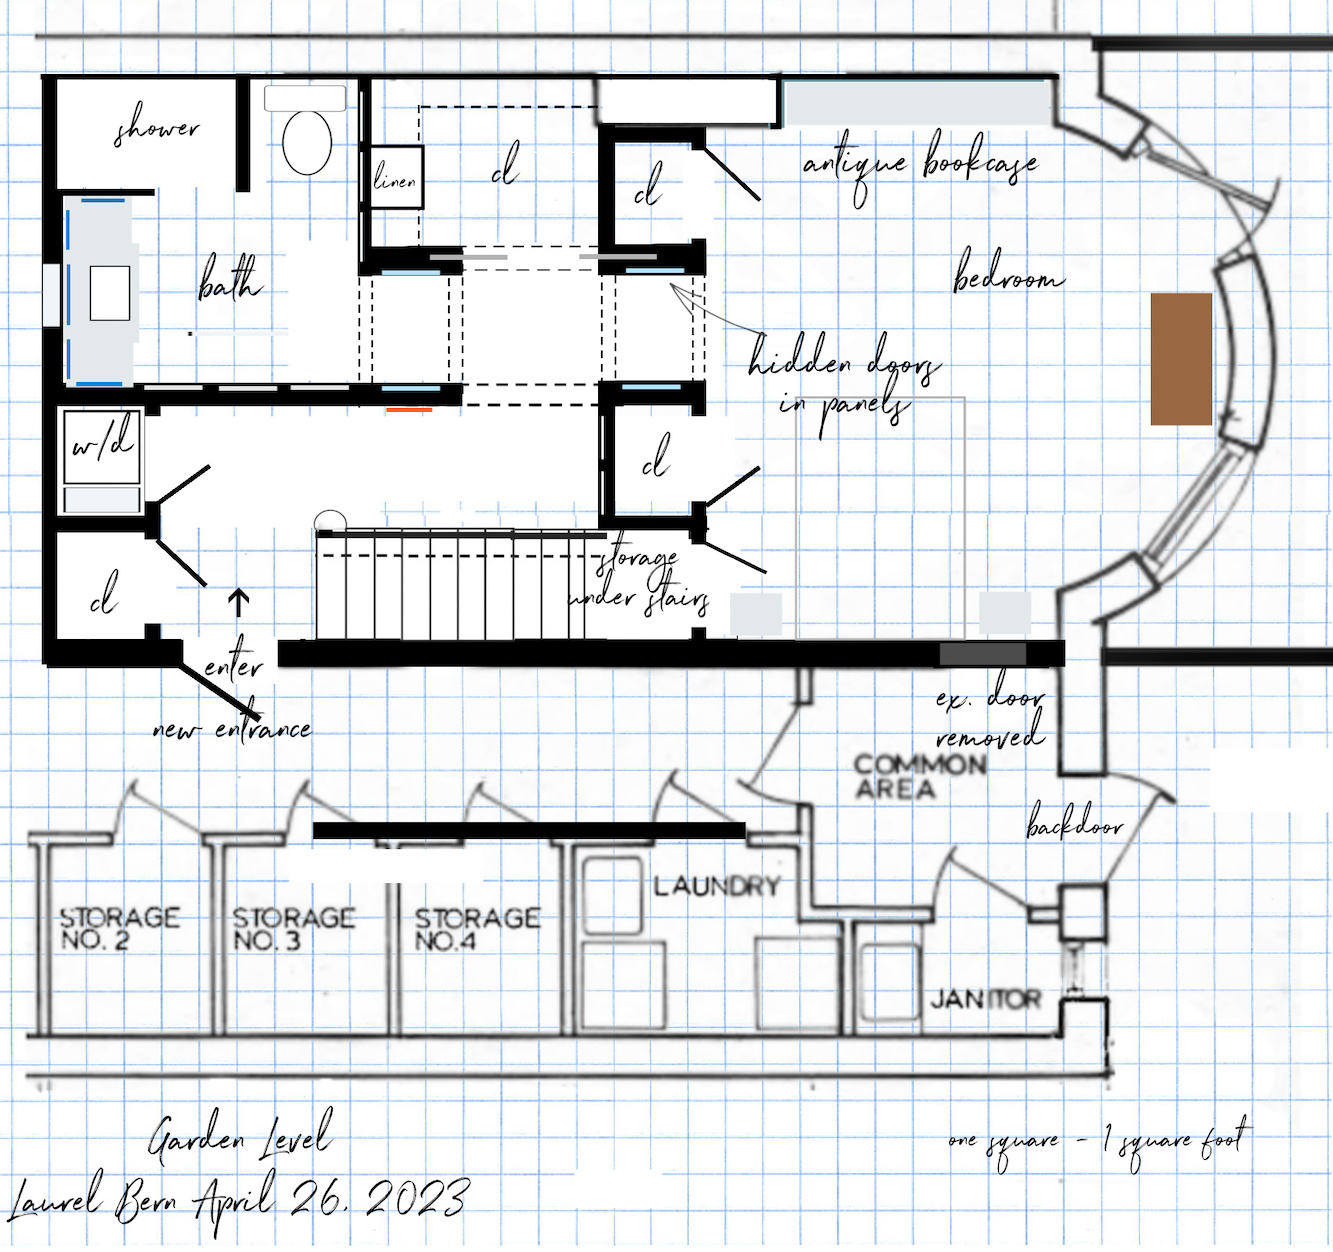 Straight run stairs Garden Level April 26, 2023 proposed plan bedroom suite hidden door panels